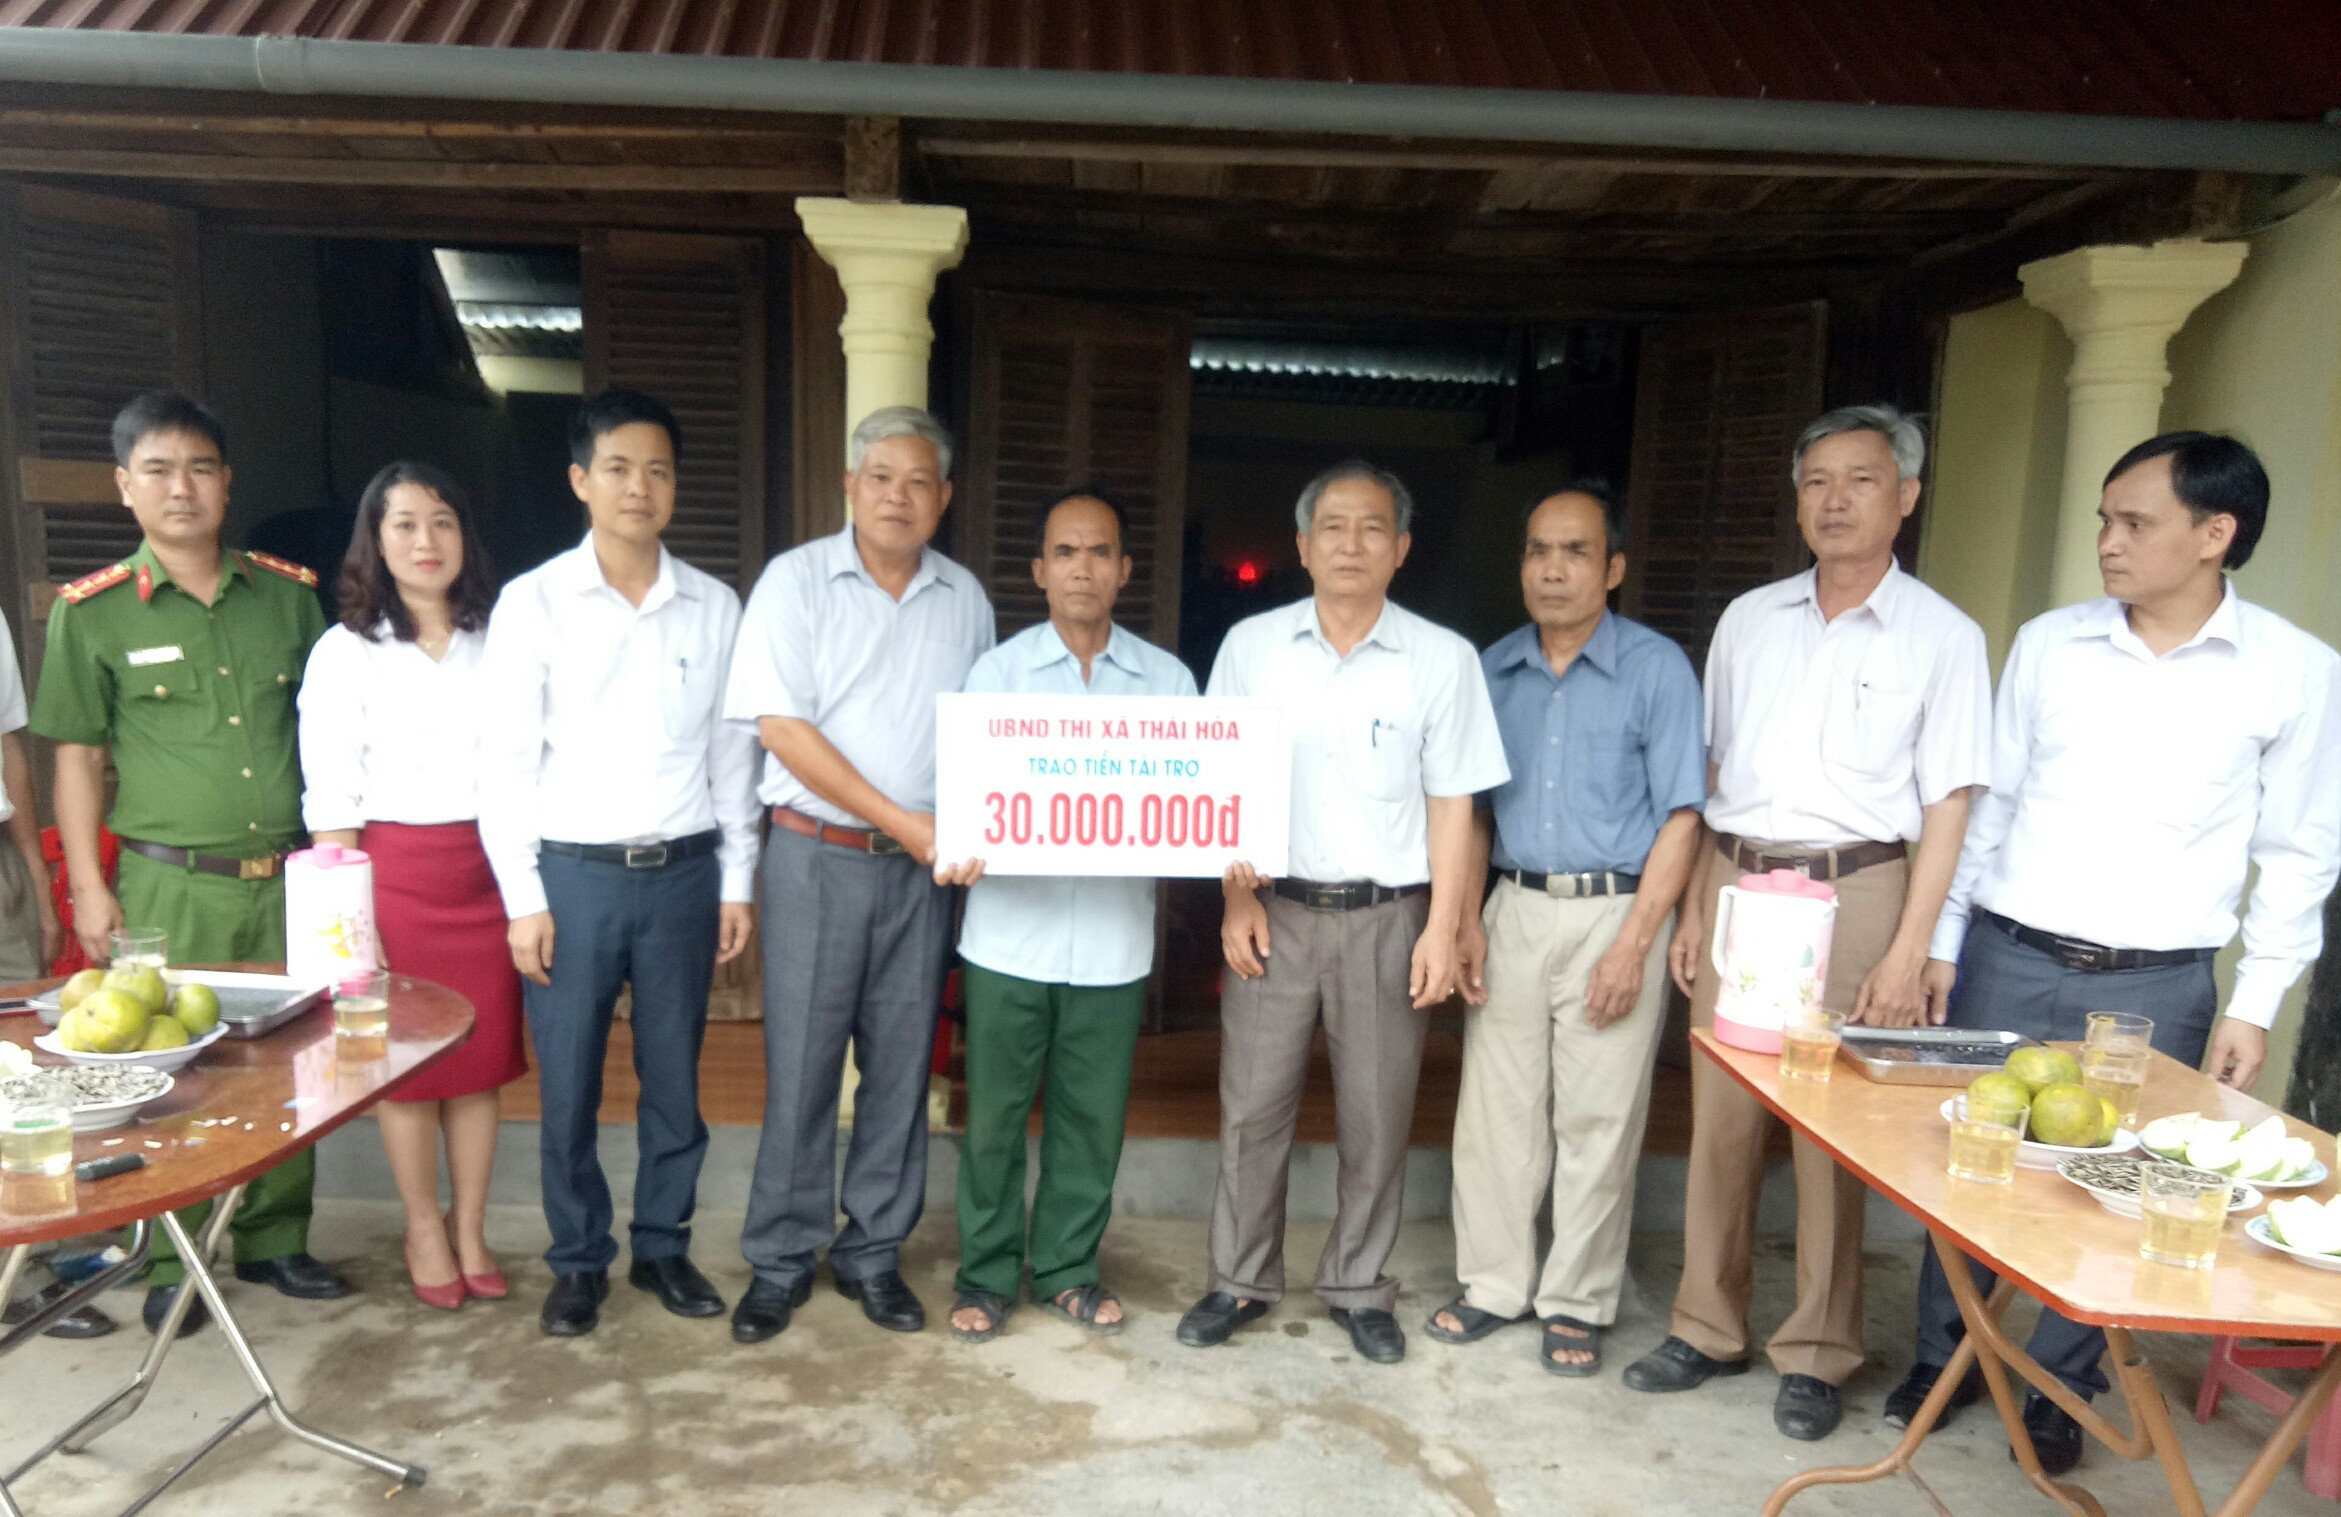 Lãnh đạo thị xã Thái Hòa trao 30 triệu đồng hỗ trợ gia đình ông Hồng sửa nhà. Ảnh : Quang Huy.